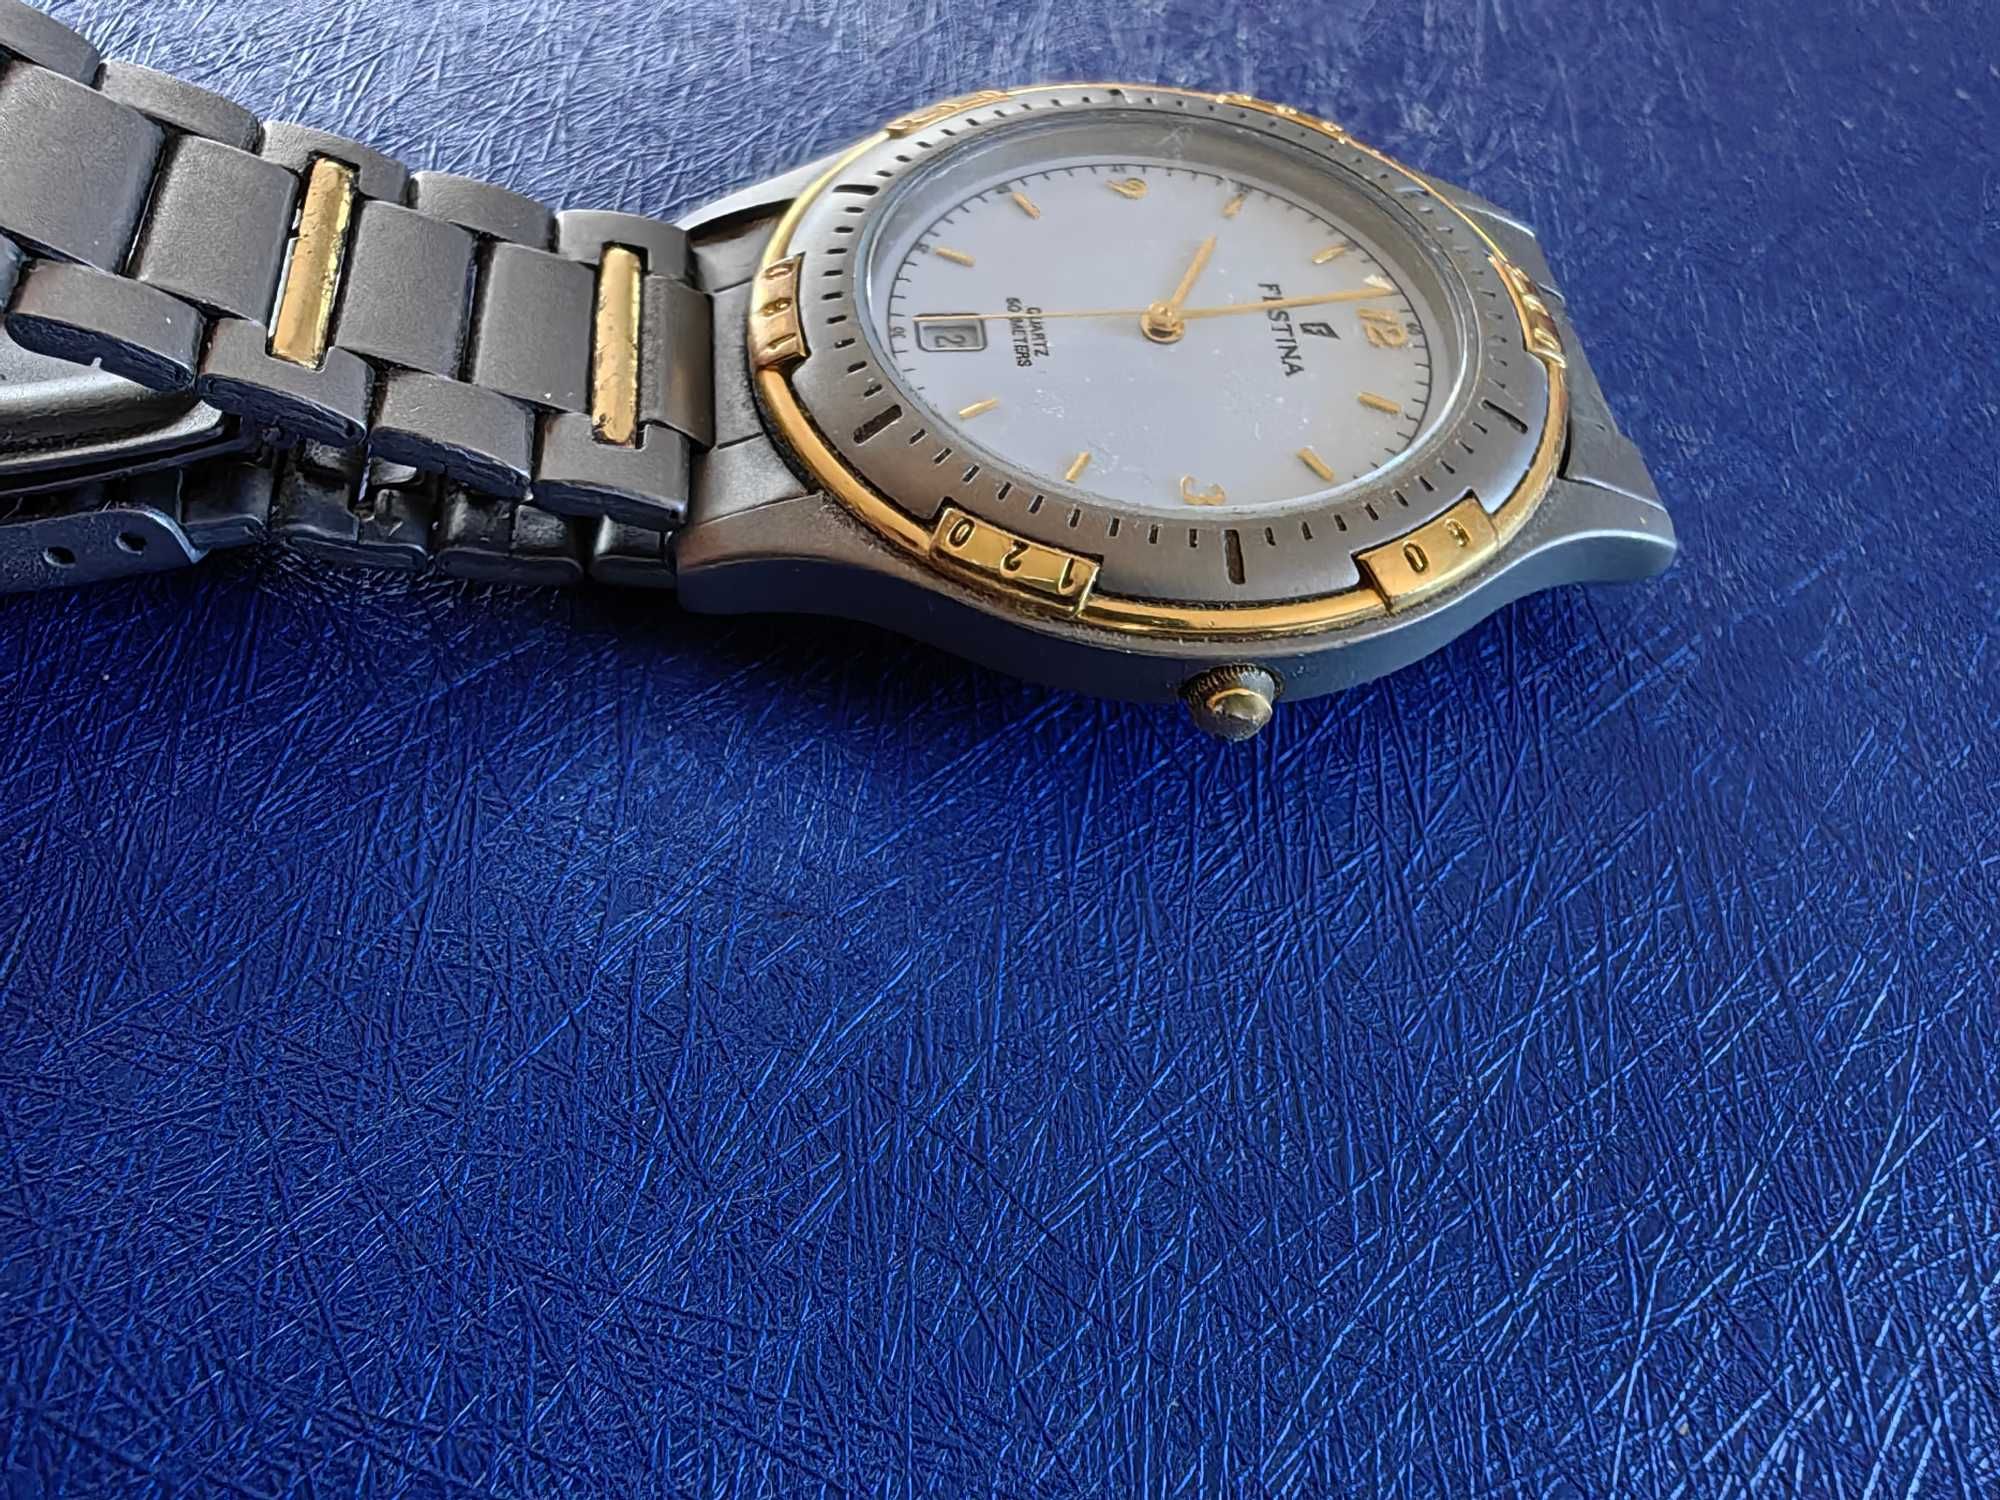 Zegarek męski Festina Titanium z bransoletą - tytanowy nieuczulający